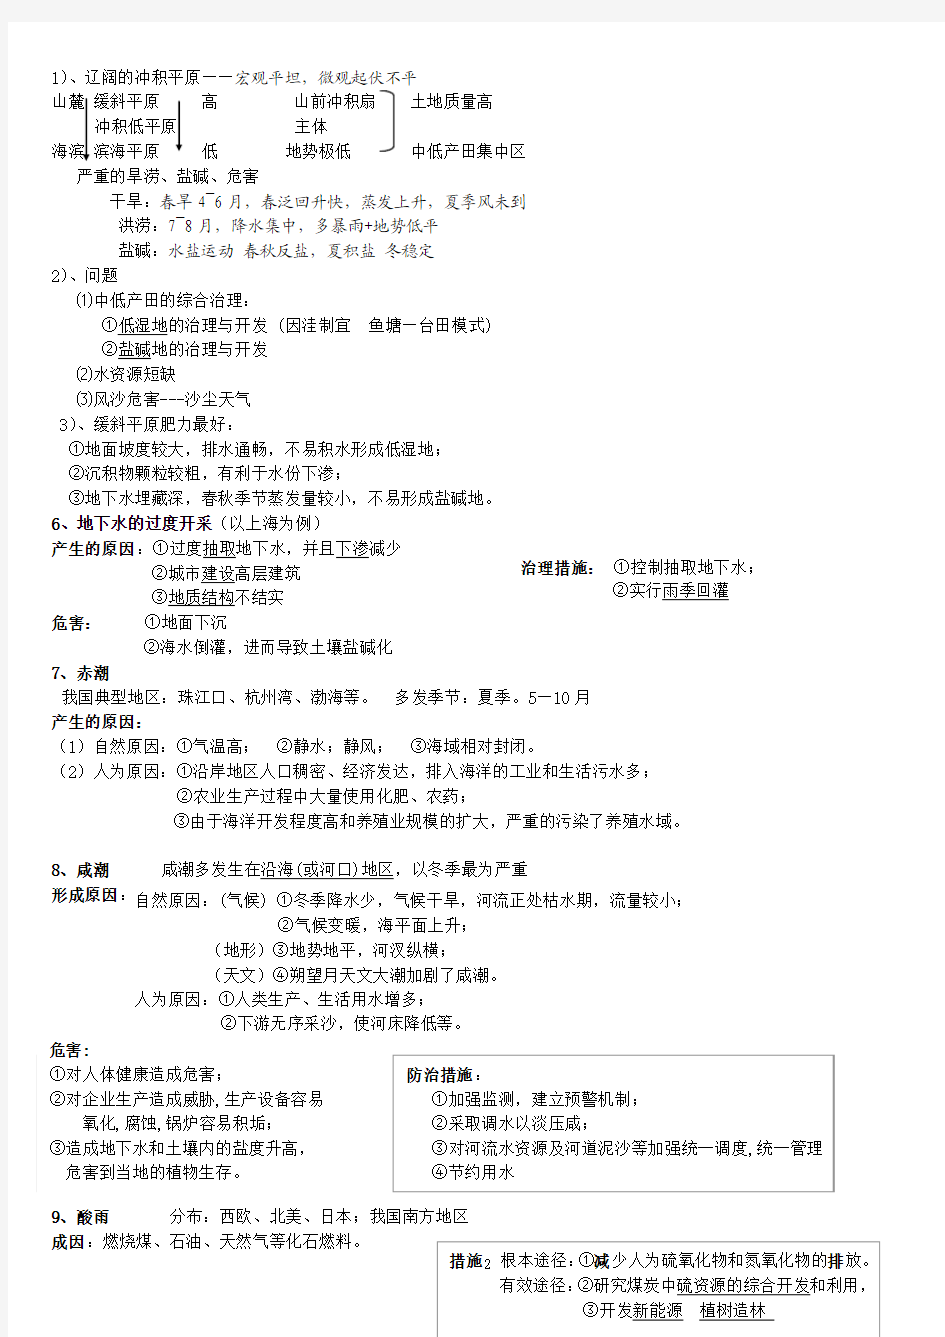 2011_2012辽宁高三高考地理大题答题模式方法(内部资料)